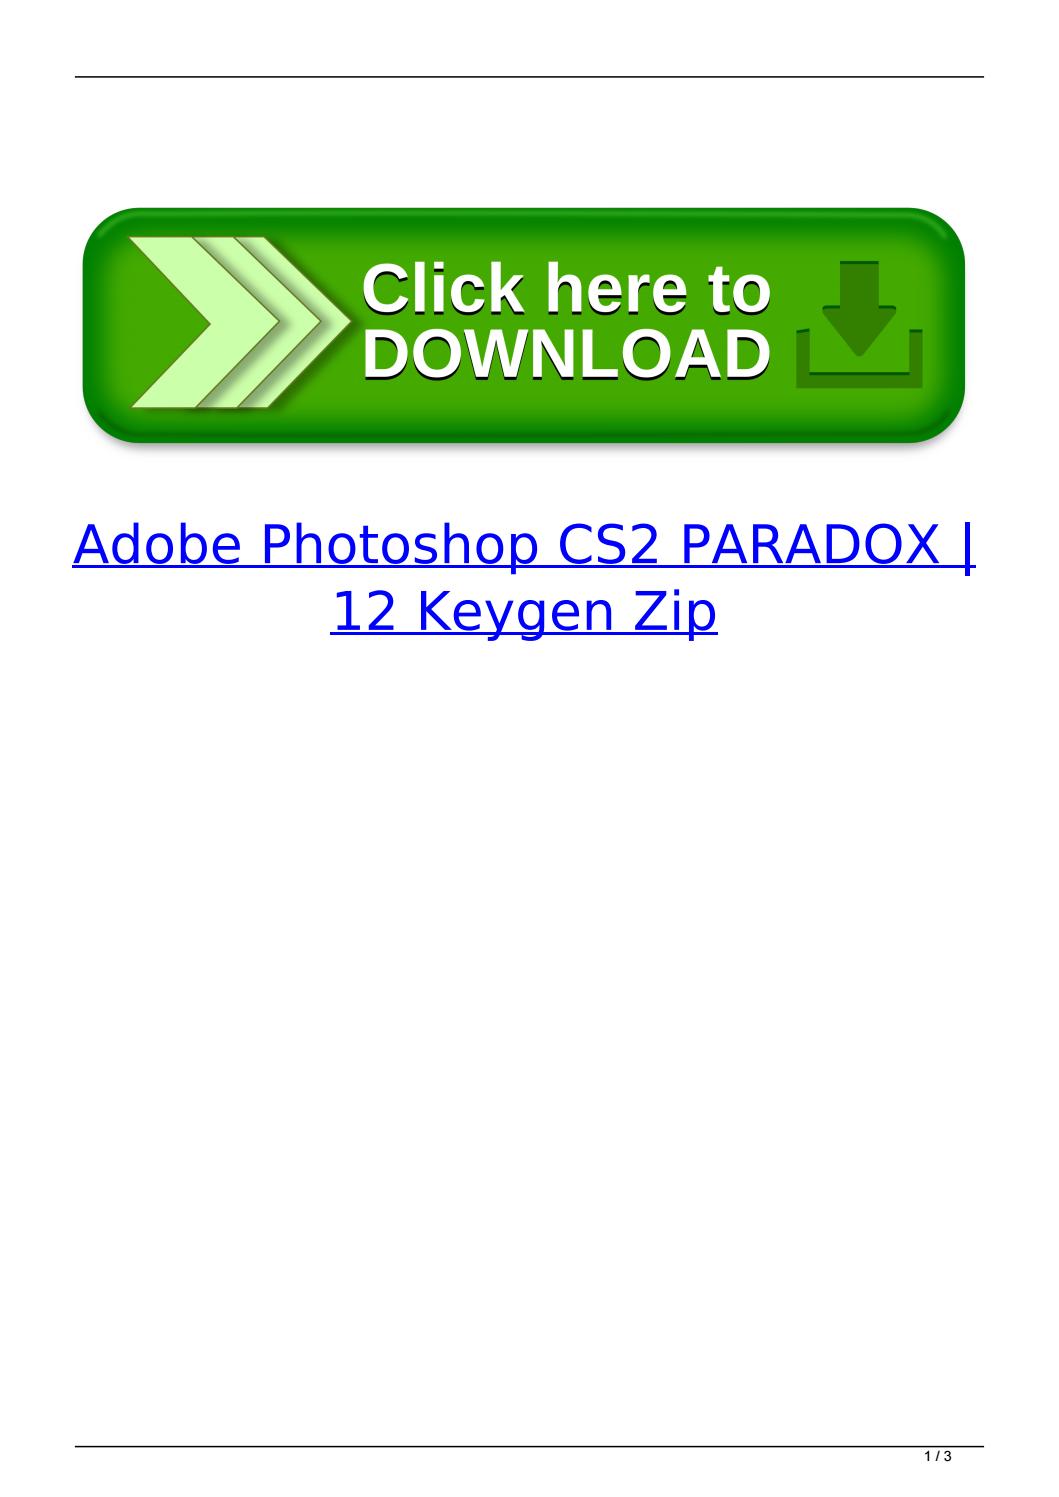 paradox adobe photoshop cs2 keygen